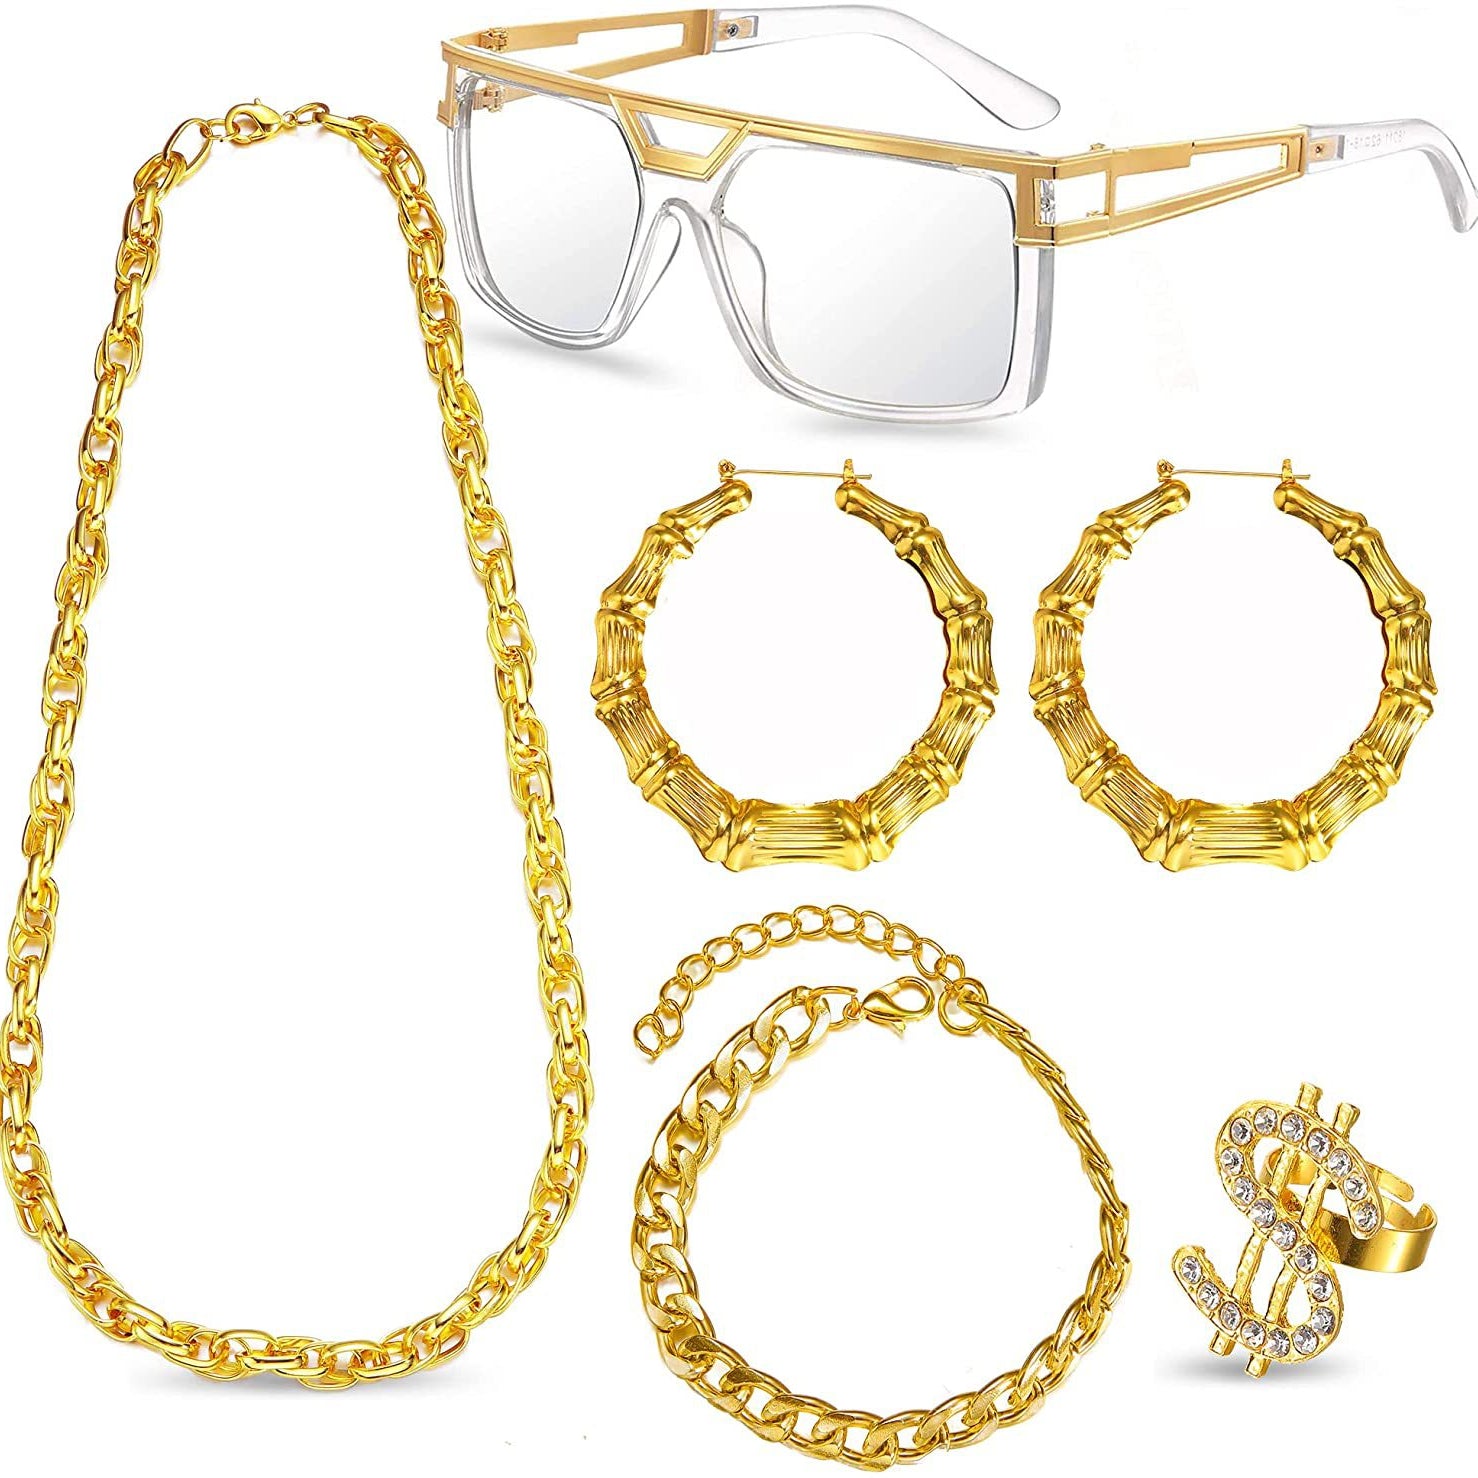 Dollar Necklace Earrings Glasses Rings Bracelet Set N5045